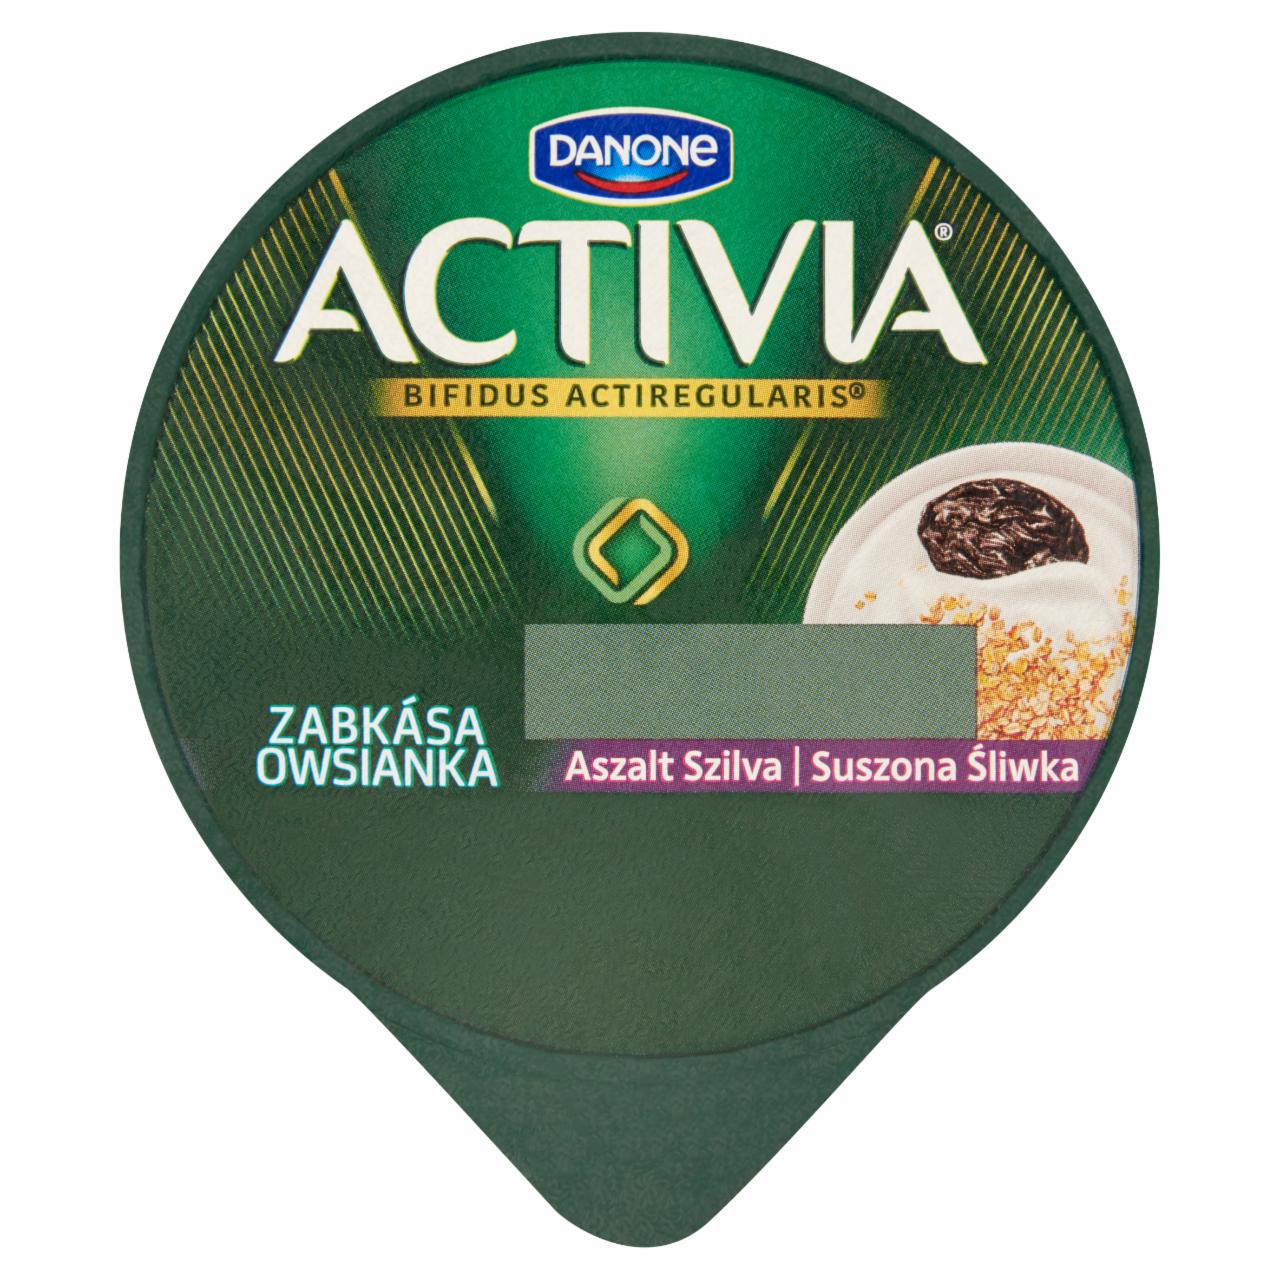 Képek - Danone Activia élőflórás zsírszegény joghurt zabkásával és aszalt szilvával 180 g